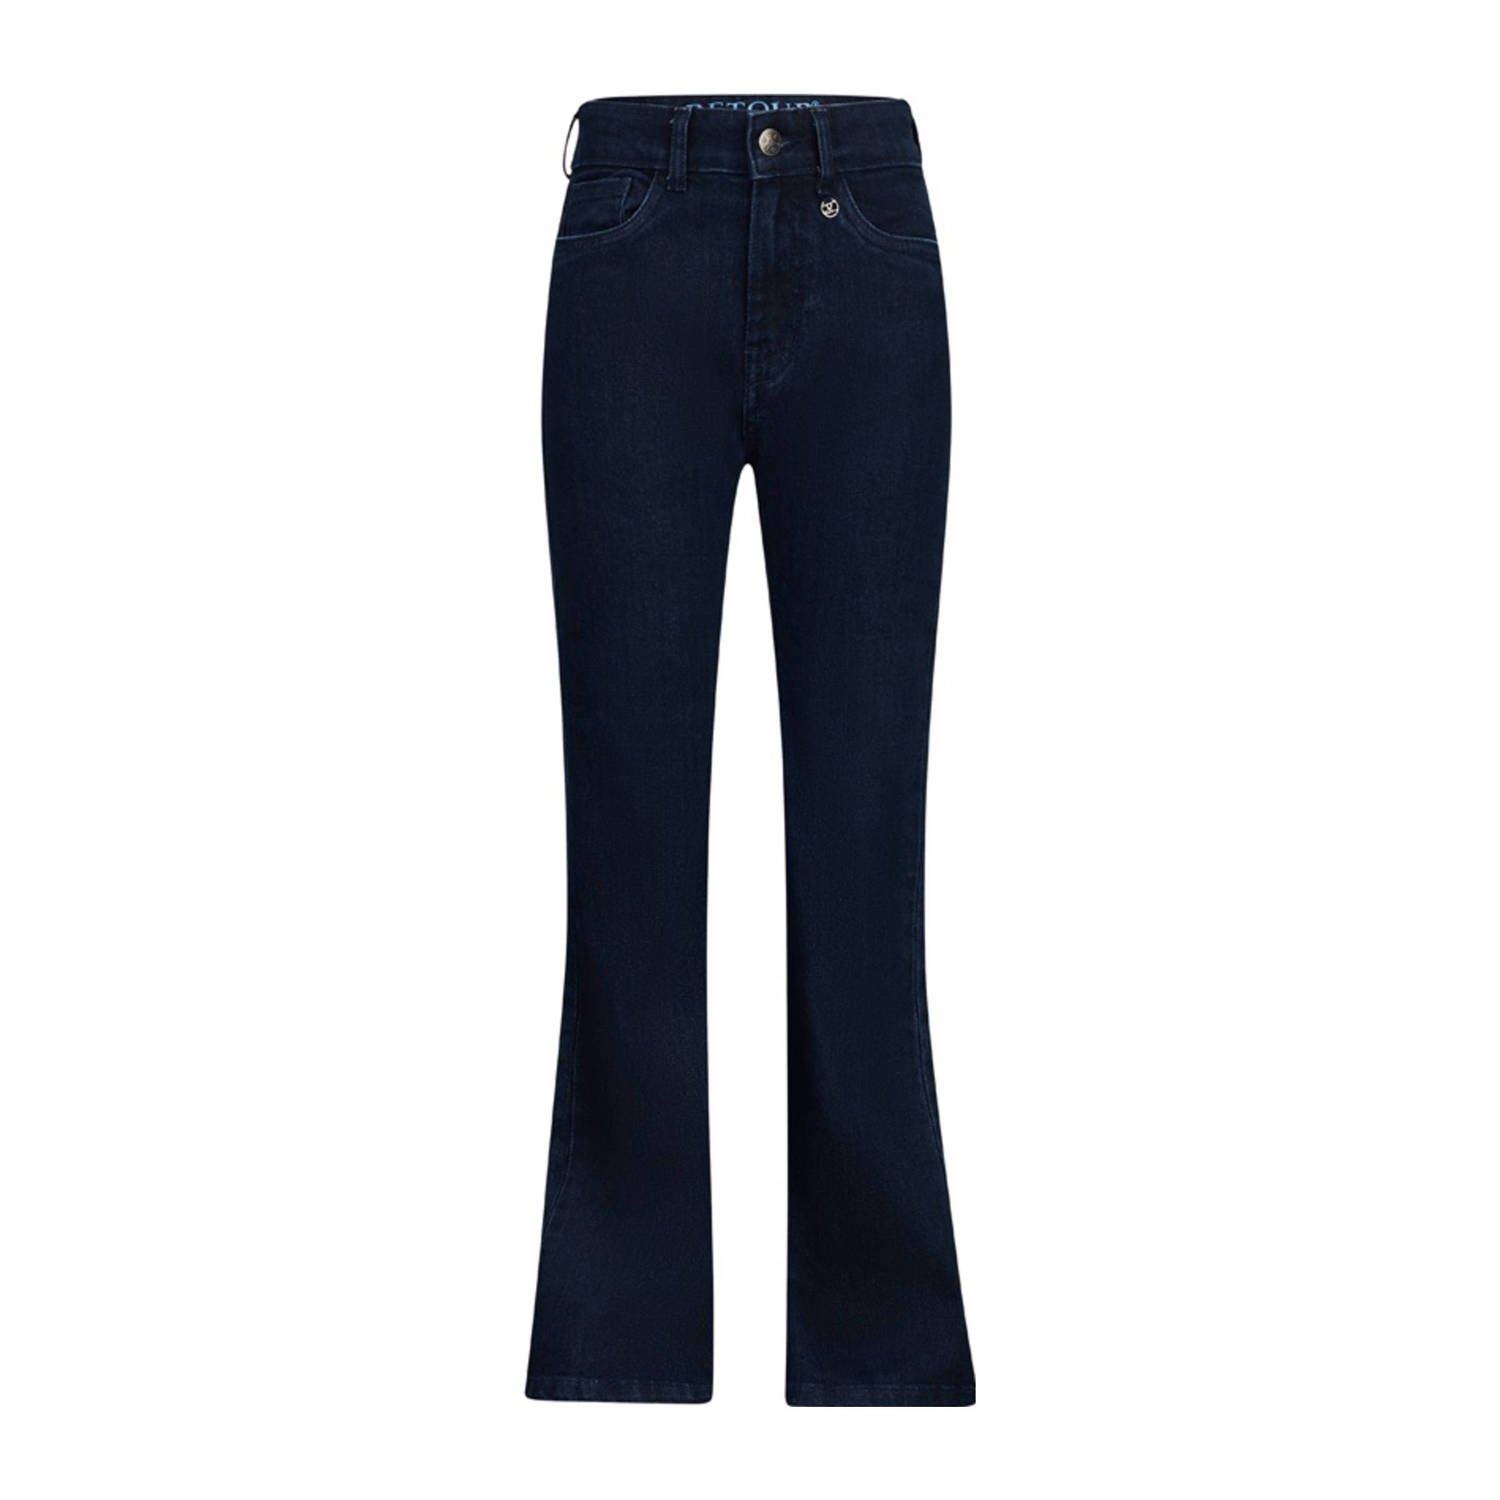 Retour Jeans high waist flared jeans Mikkie dark blue denim Blauw Meisjes Stretchdenim 122